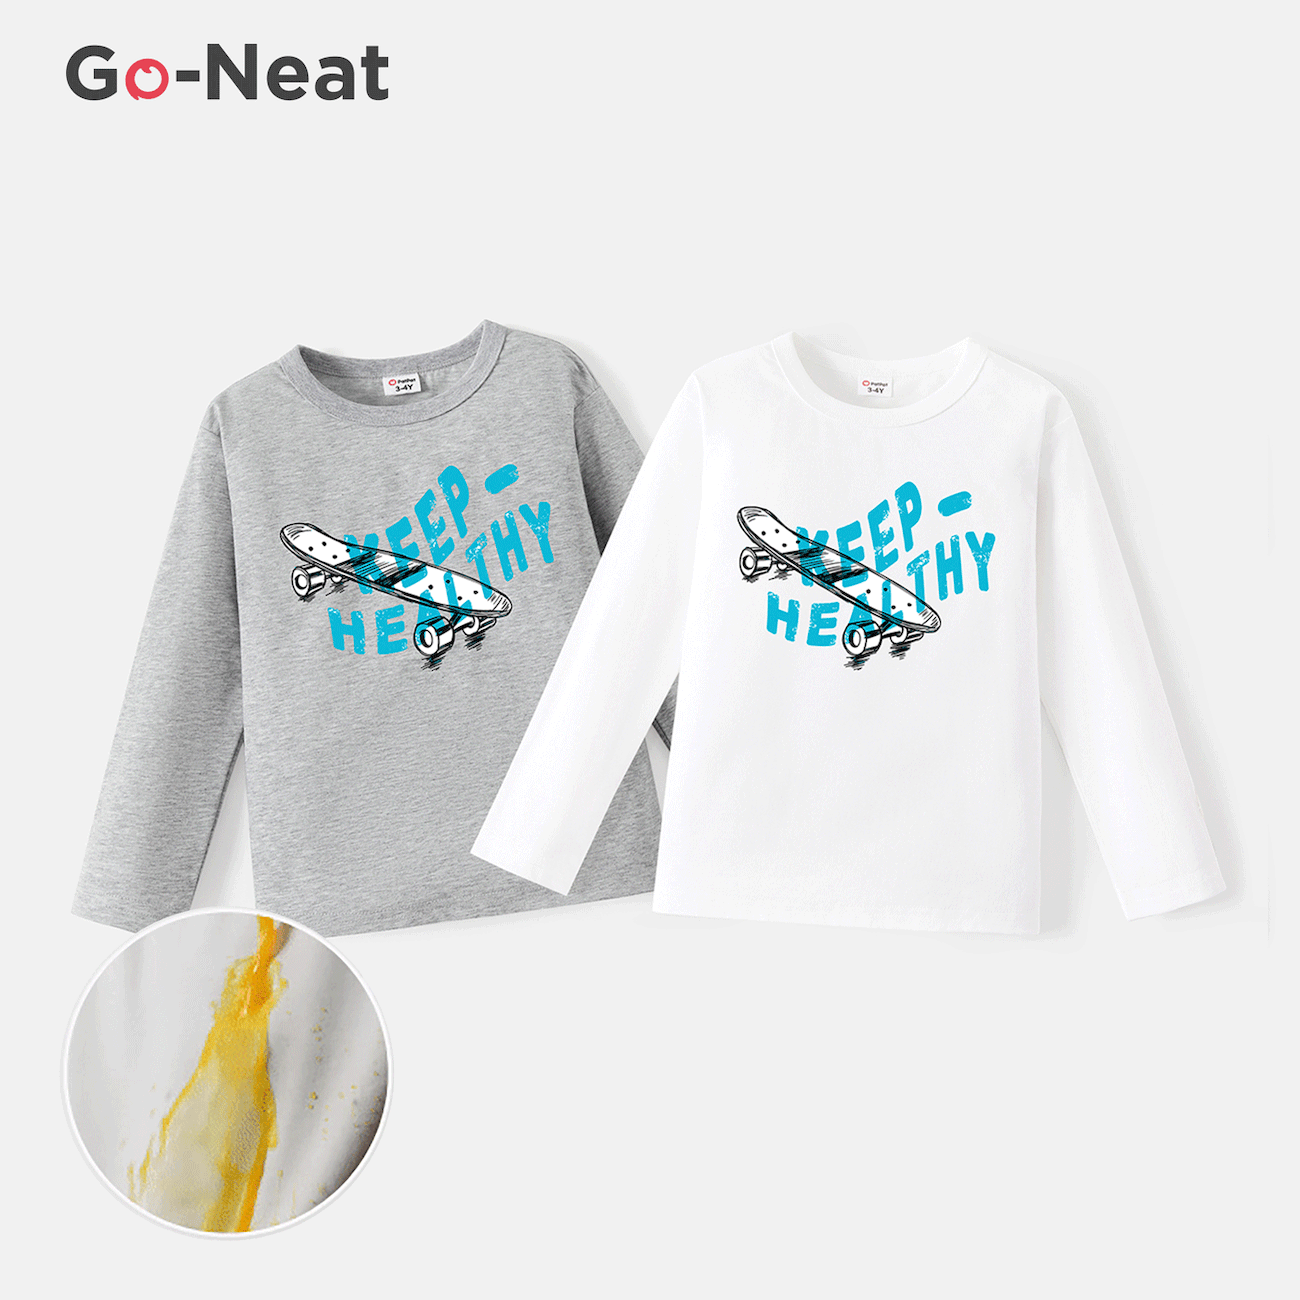 Go-Neat, wasserabweisendes und schmutzabweisendes Geschwister-T-Shirt mit passendem Skateboard und Buchstabenaufdruck hellgrau big image 1